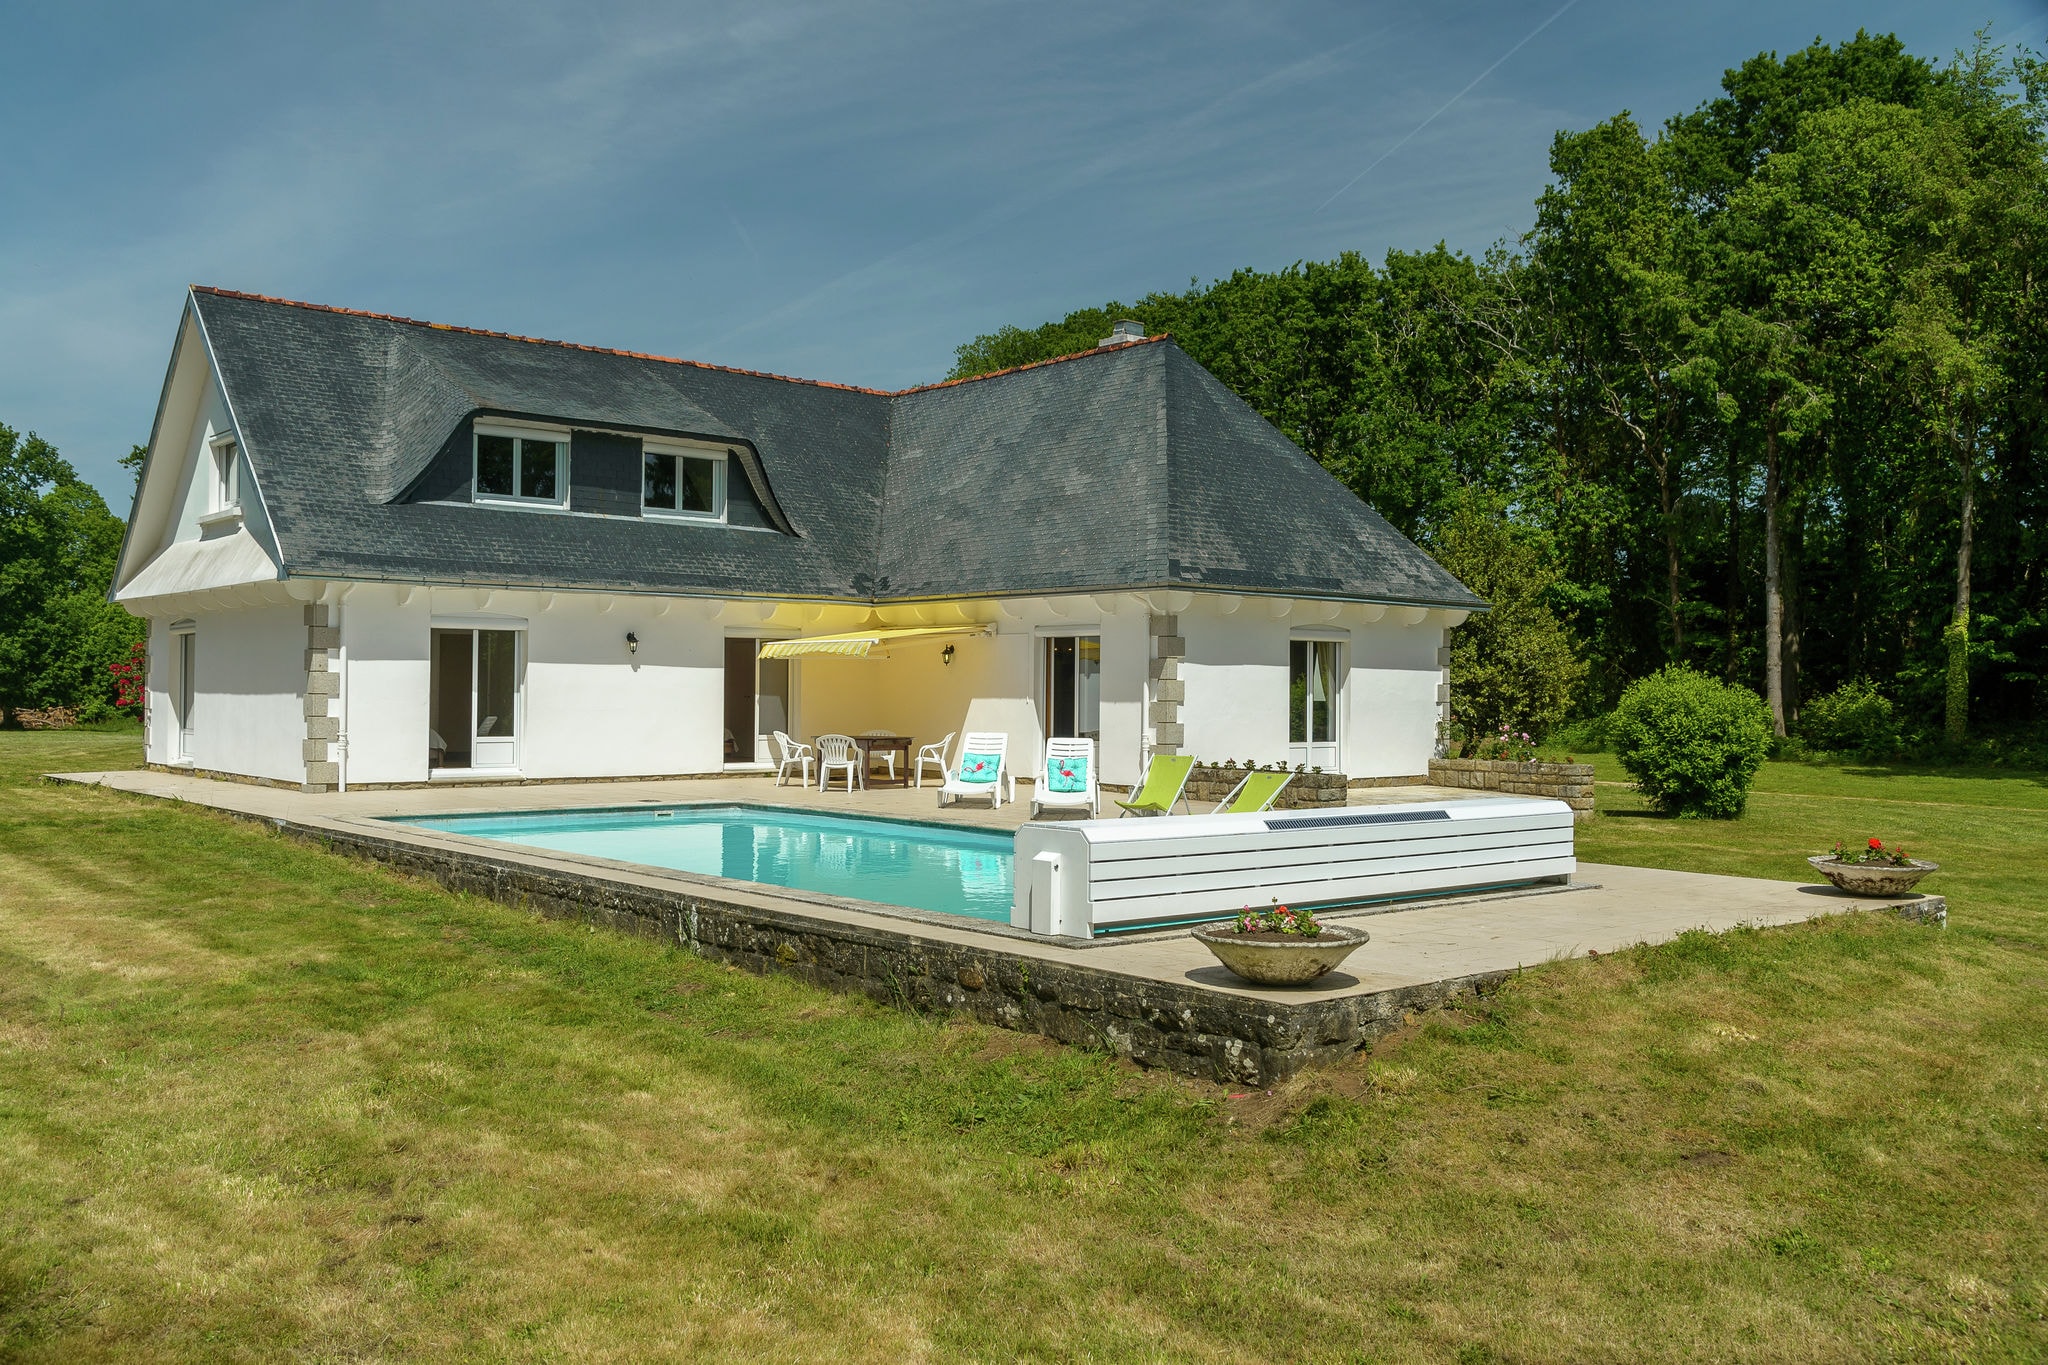 Prachtige villa met zwembad, een grote tuin gelegen in een mooie groene omgeving